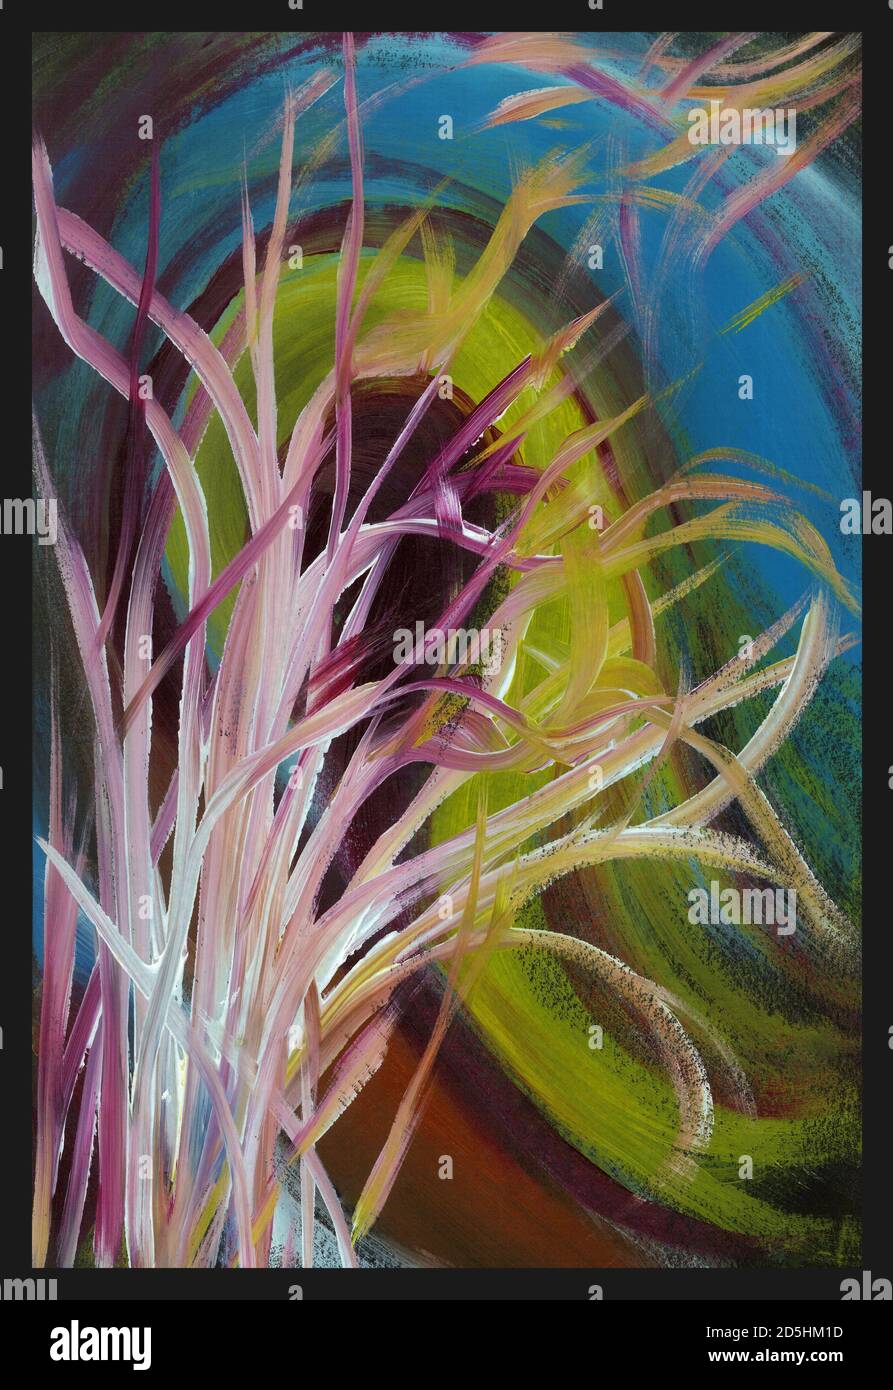 Abstrakte Frau Acryl Malerei. Abstrakte Frau und Pflanzen auf Acryl-Malerei Hintergrund. Gemalt vom Fotografen. Stockfoto